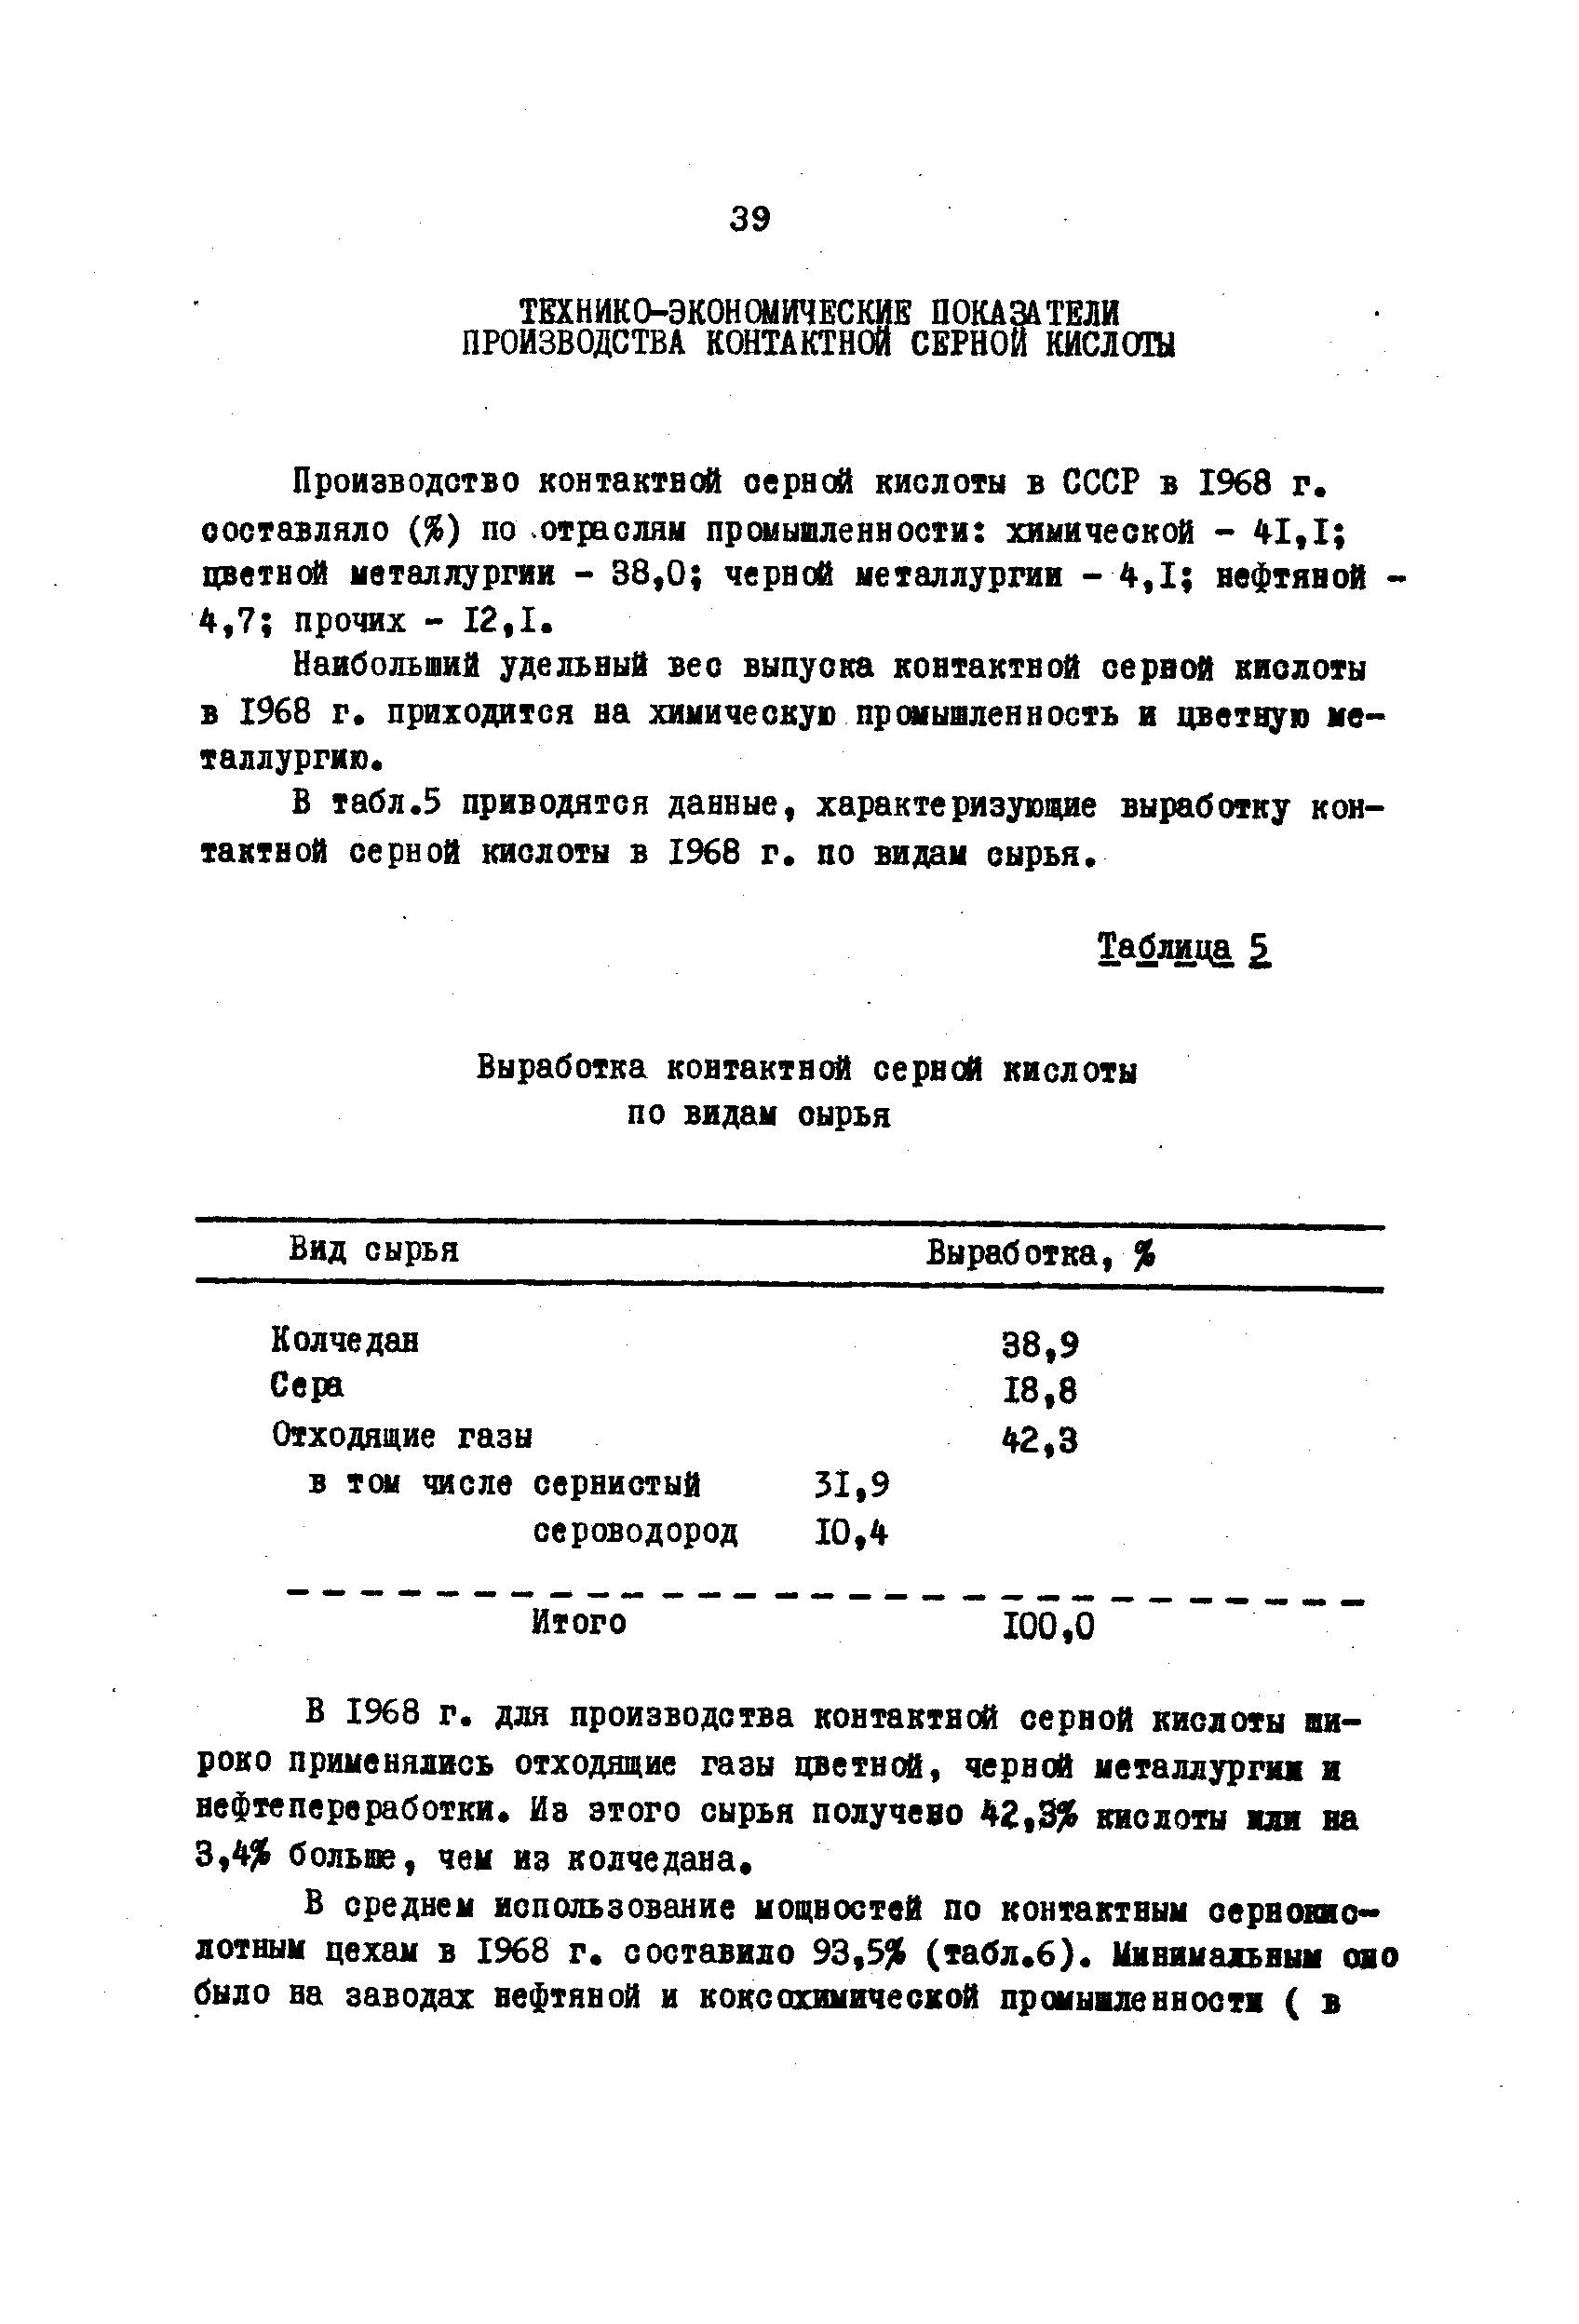 Наибольший удельный вес выпуска контактной сервсЛ кислоты в 1968 г. приходится на химическую промышленность и цветную металлургию.